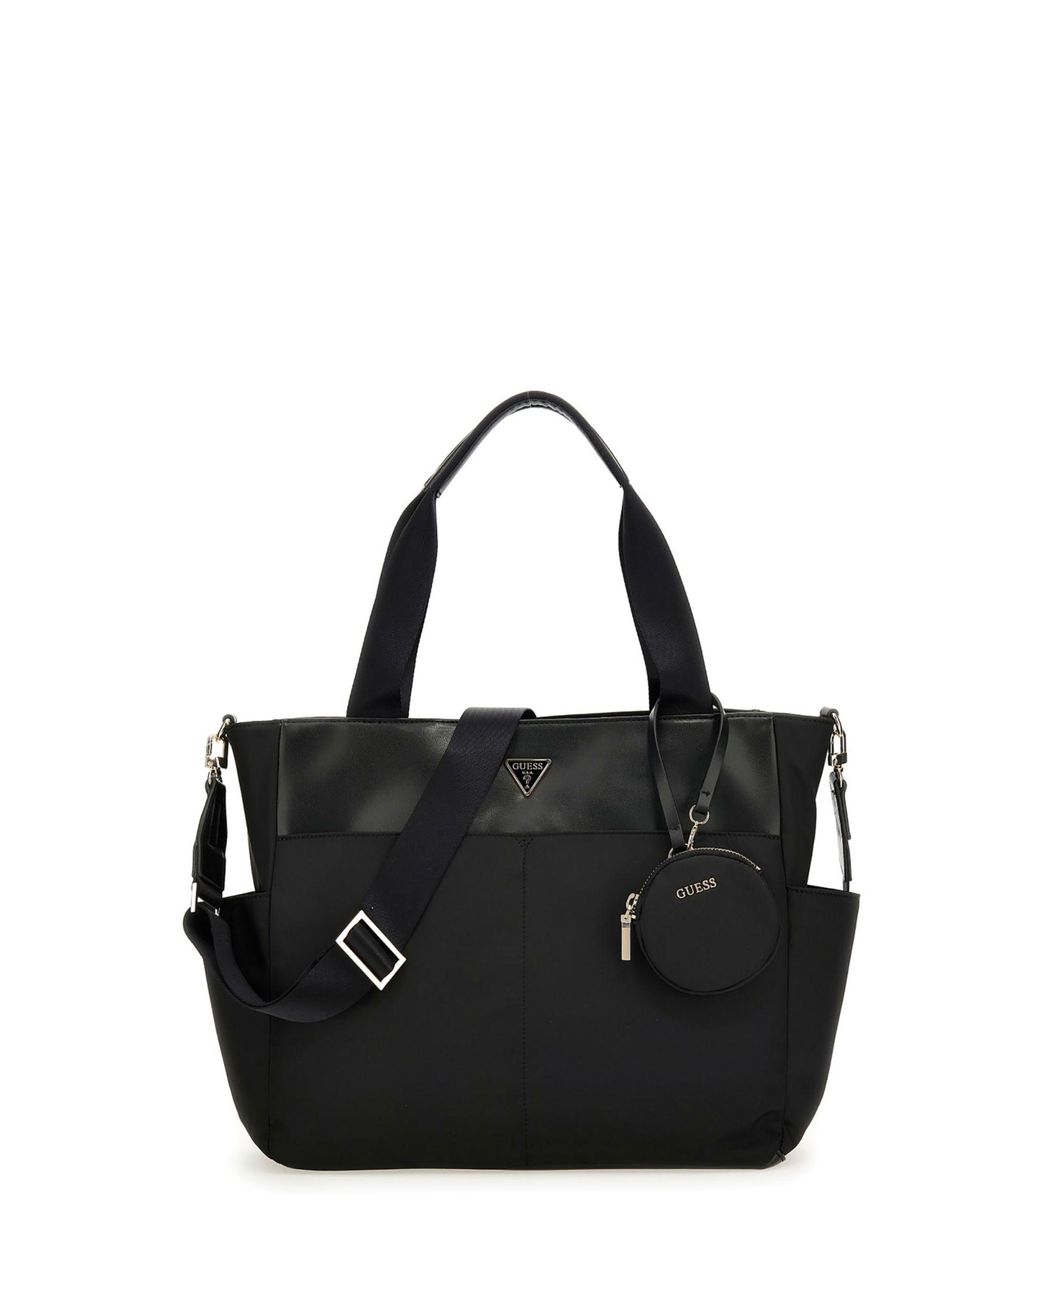 Guess Eco Gemma Shopper Tote Bag in Black | Lyst UK